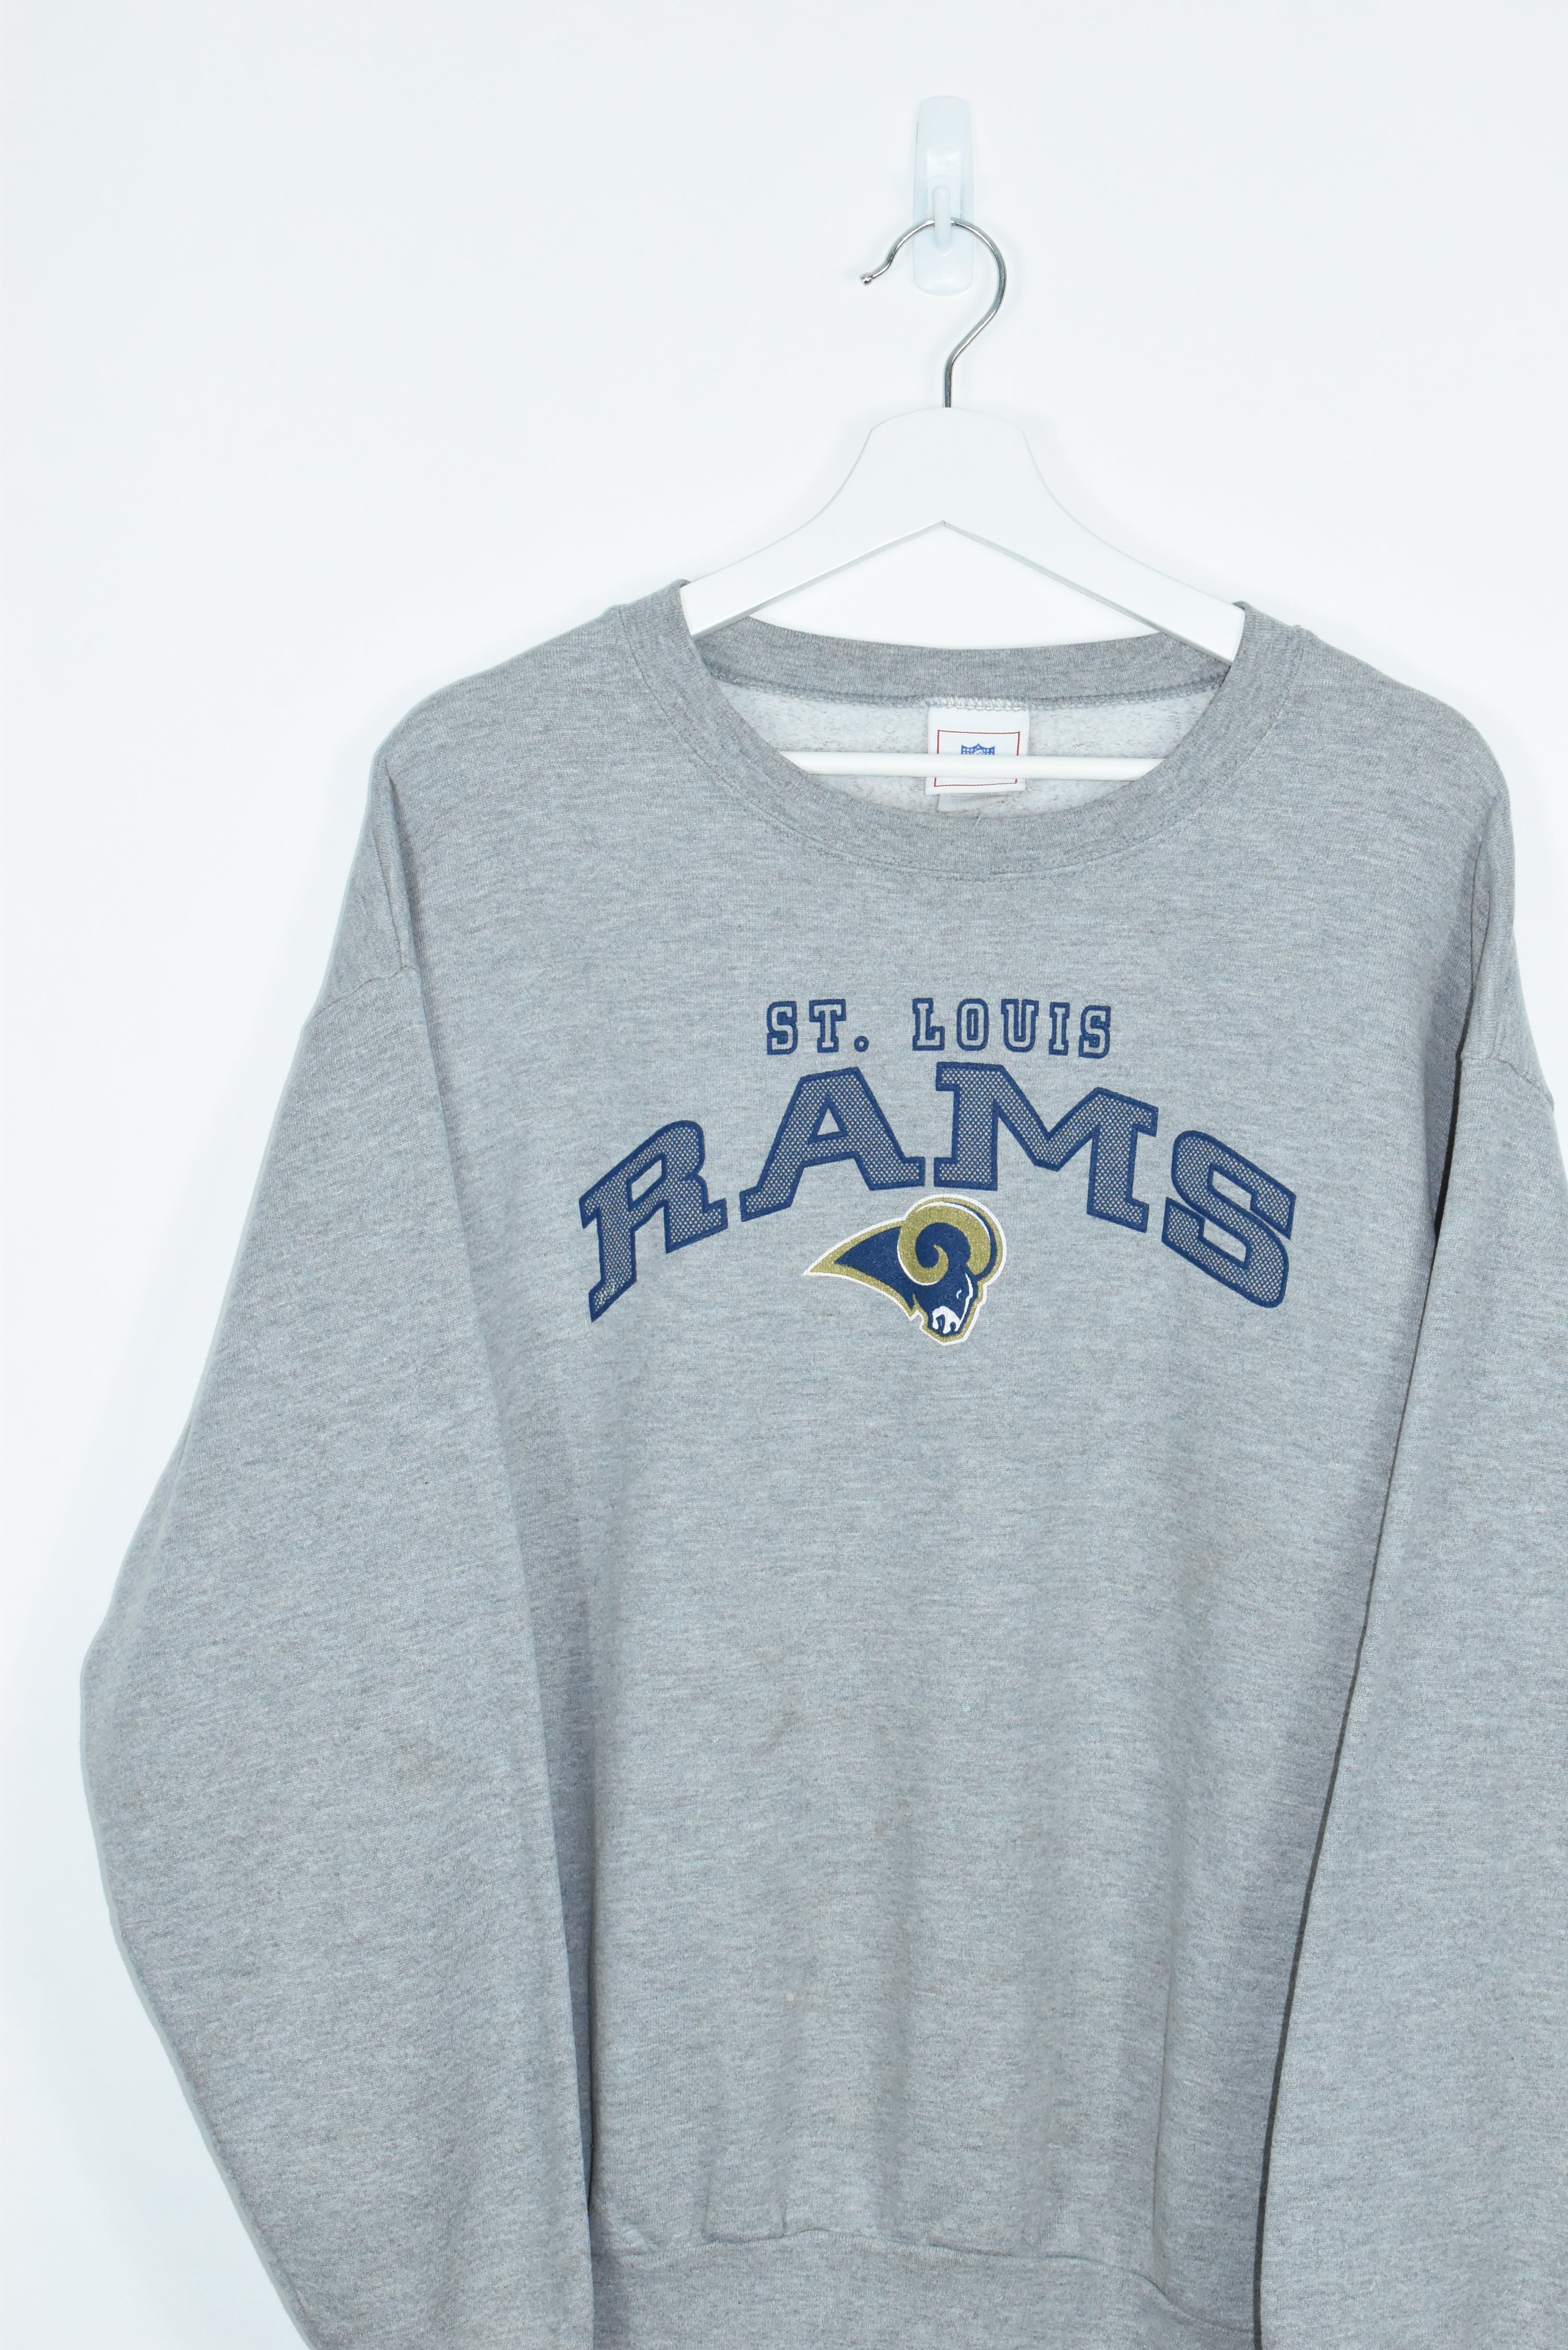 Vintage St Louis Rams Sweatshirt XLARGE